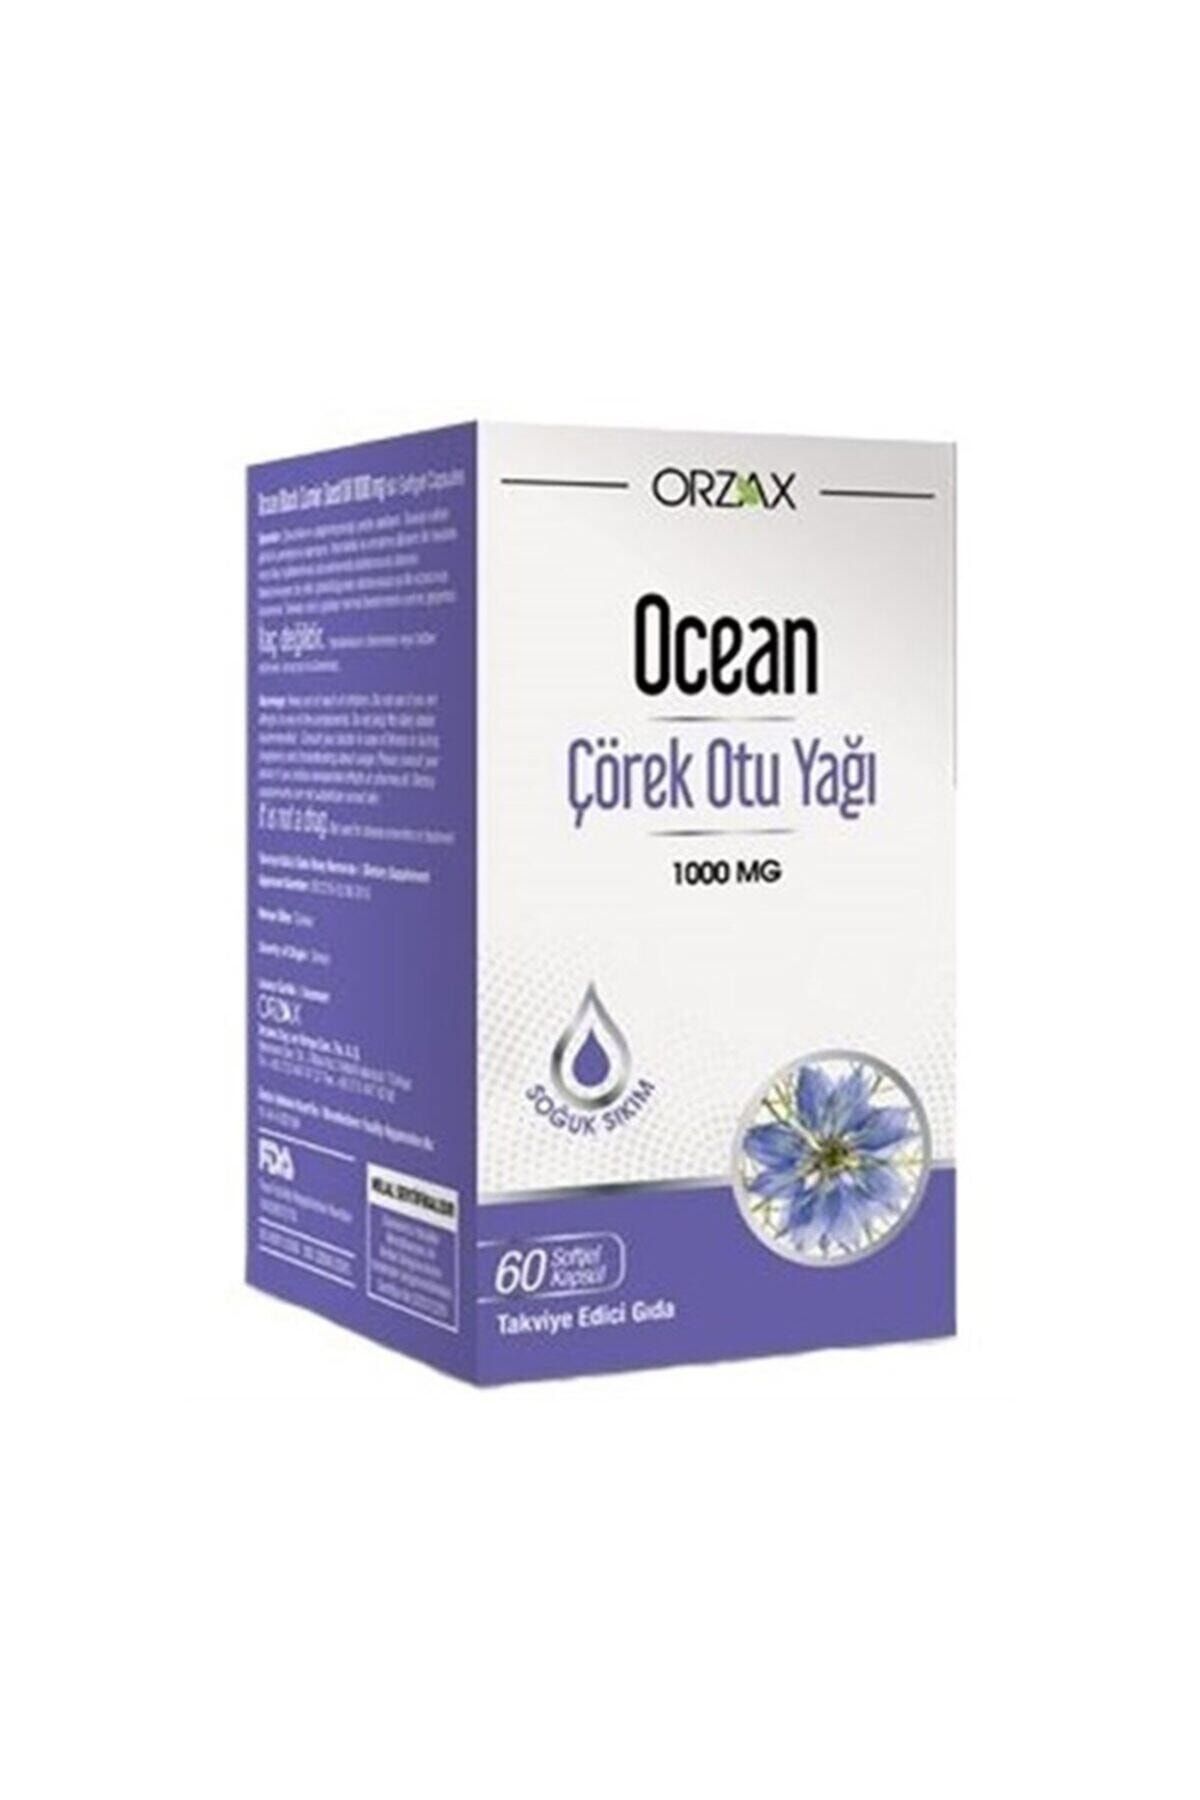 Ocean Ocean Çörek Otu Yağı 1000 mg (60 Kapsül)